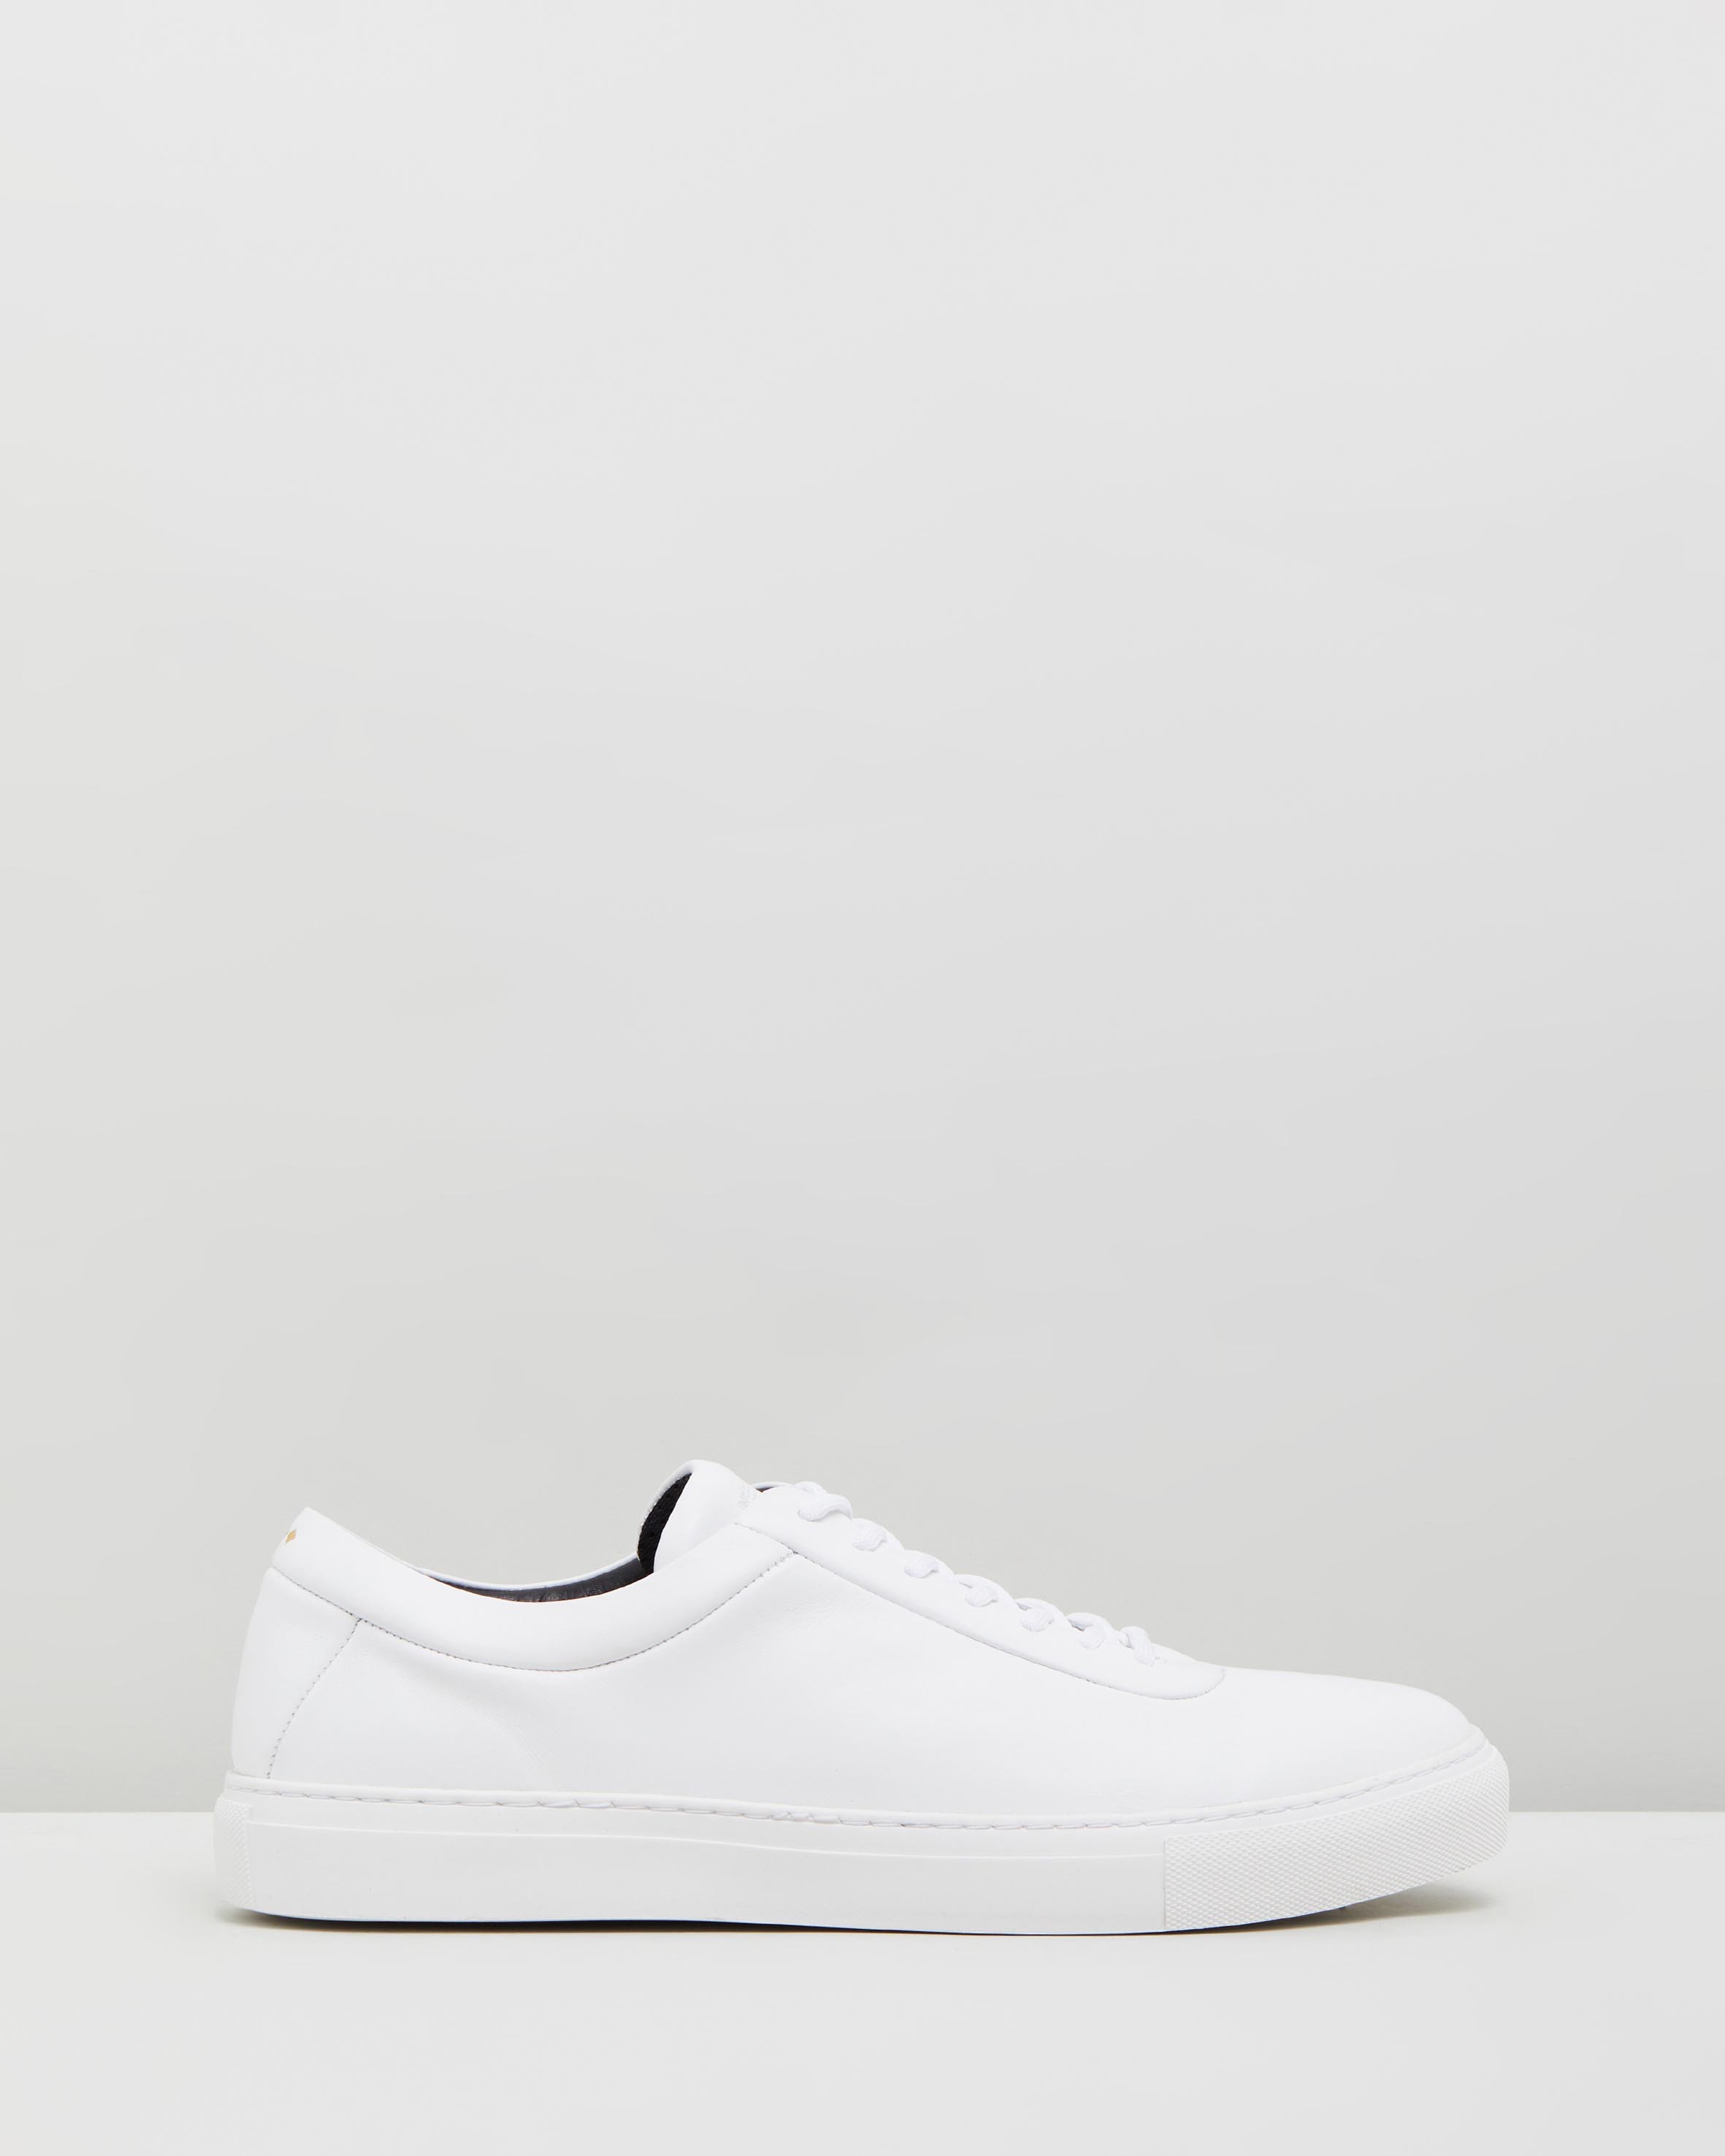 Spartacus Base Shoes White by Royal Republiq | ShoeSales